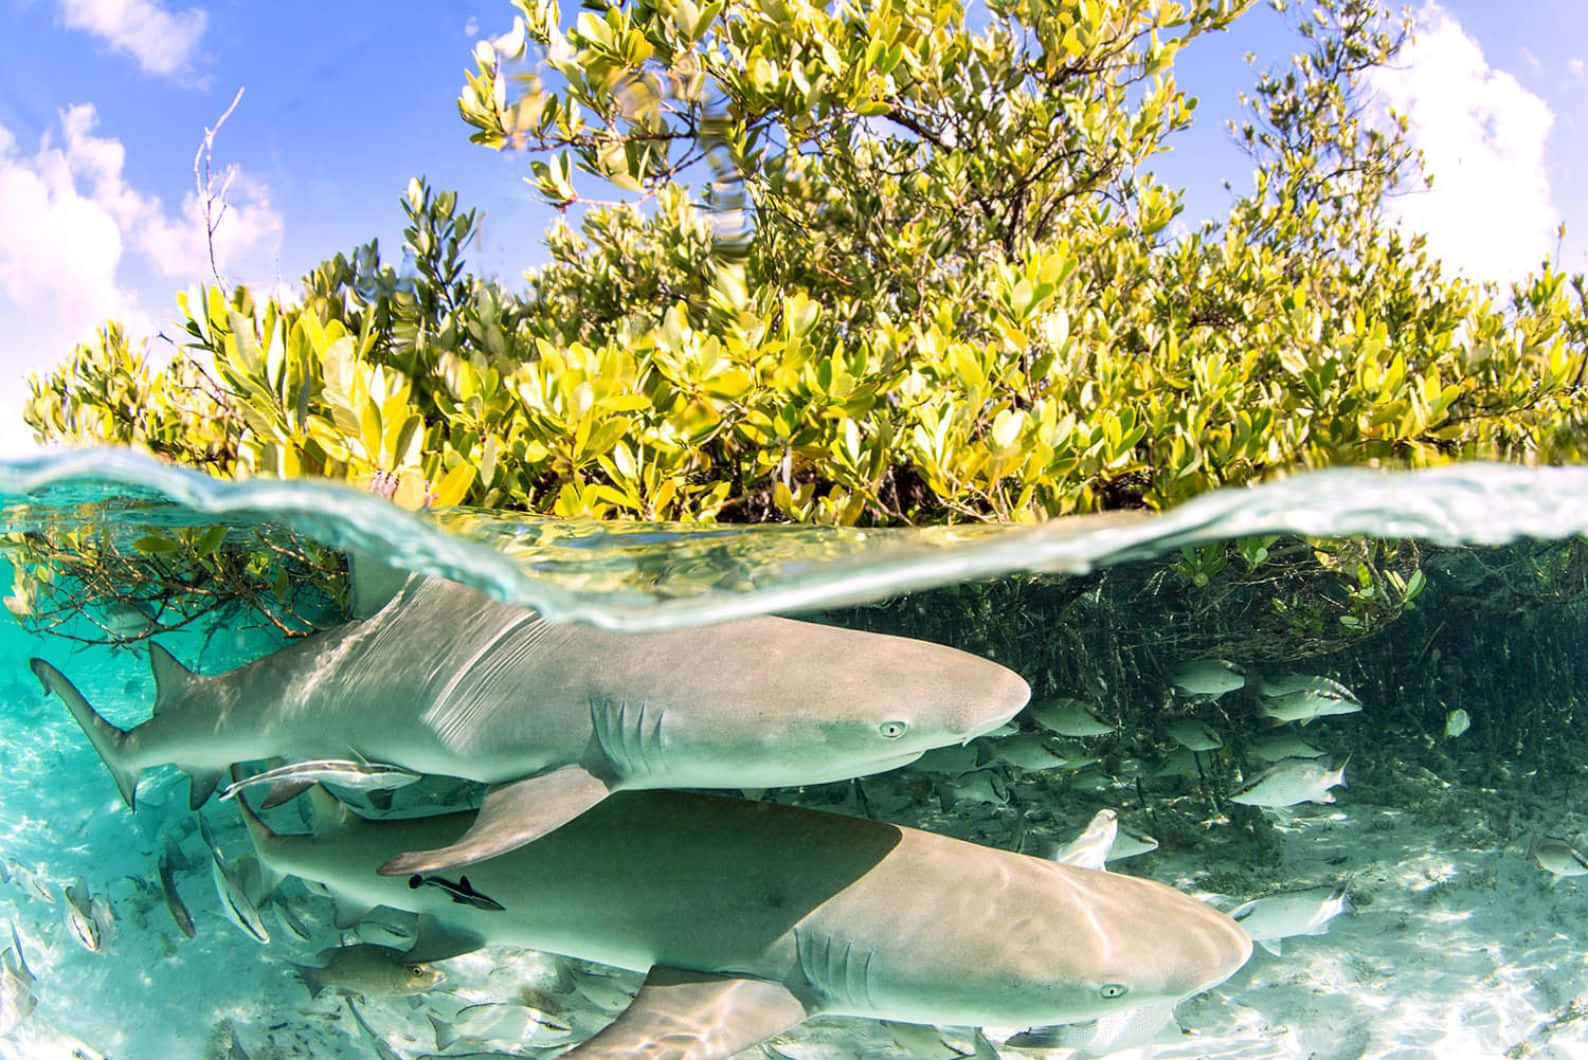 Lemon Sharks Mangrove Split View Wallpaper